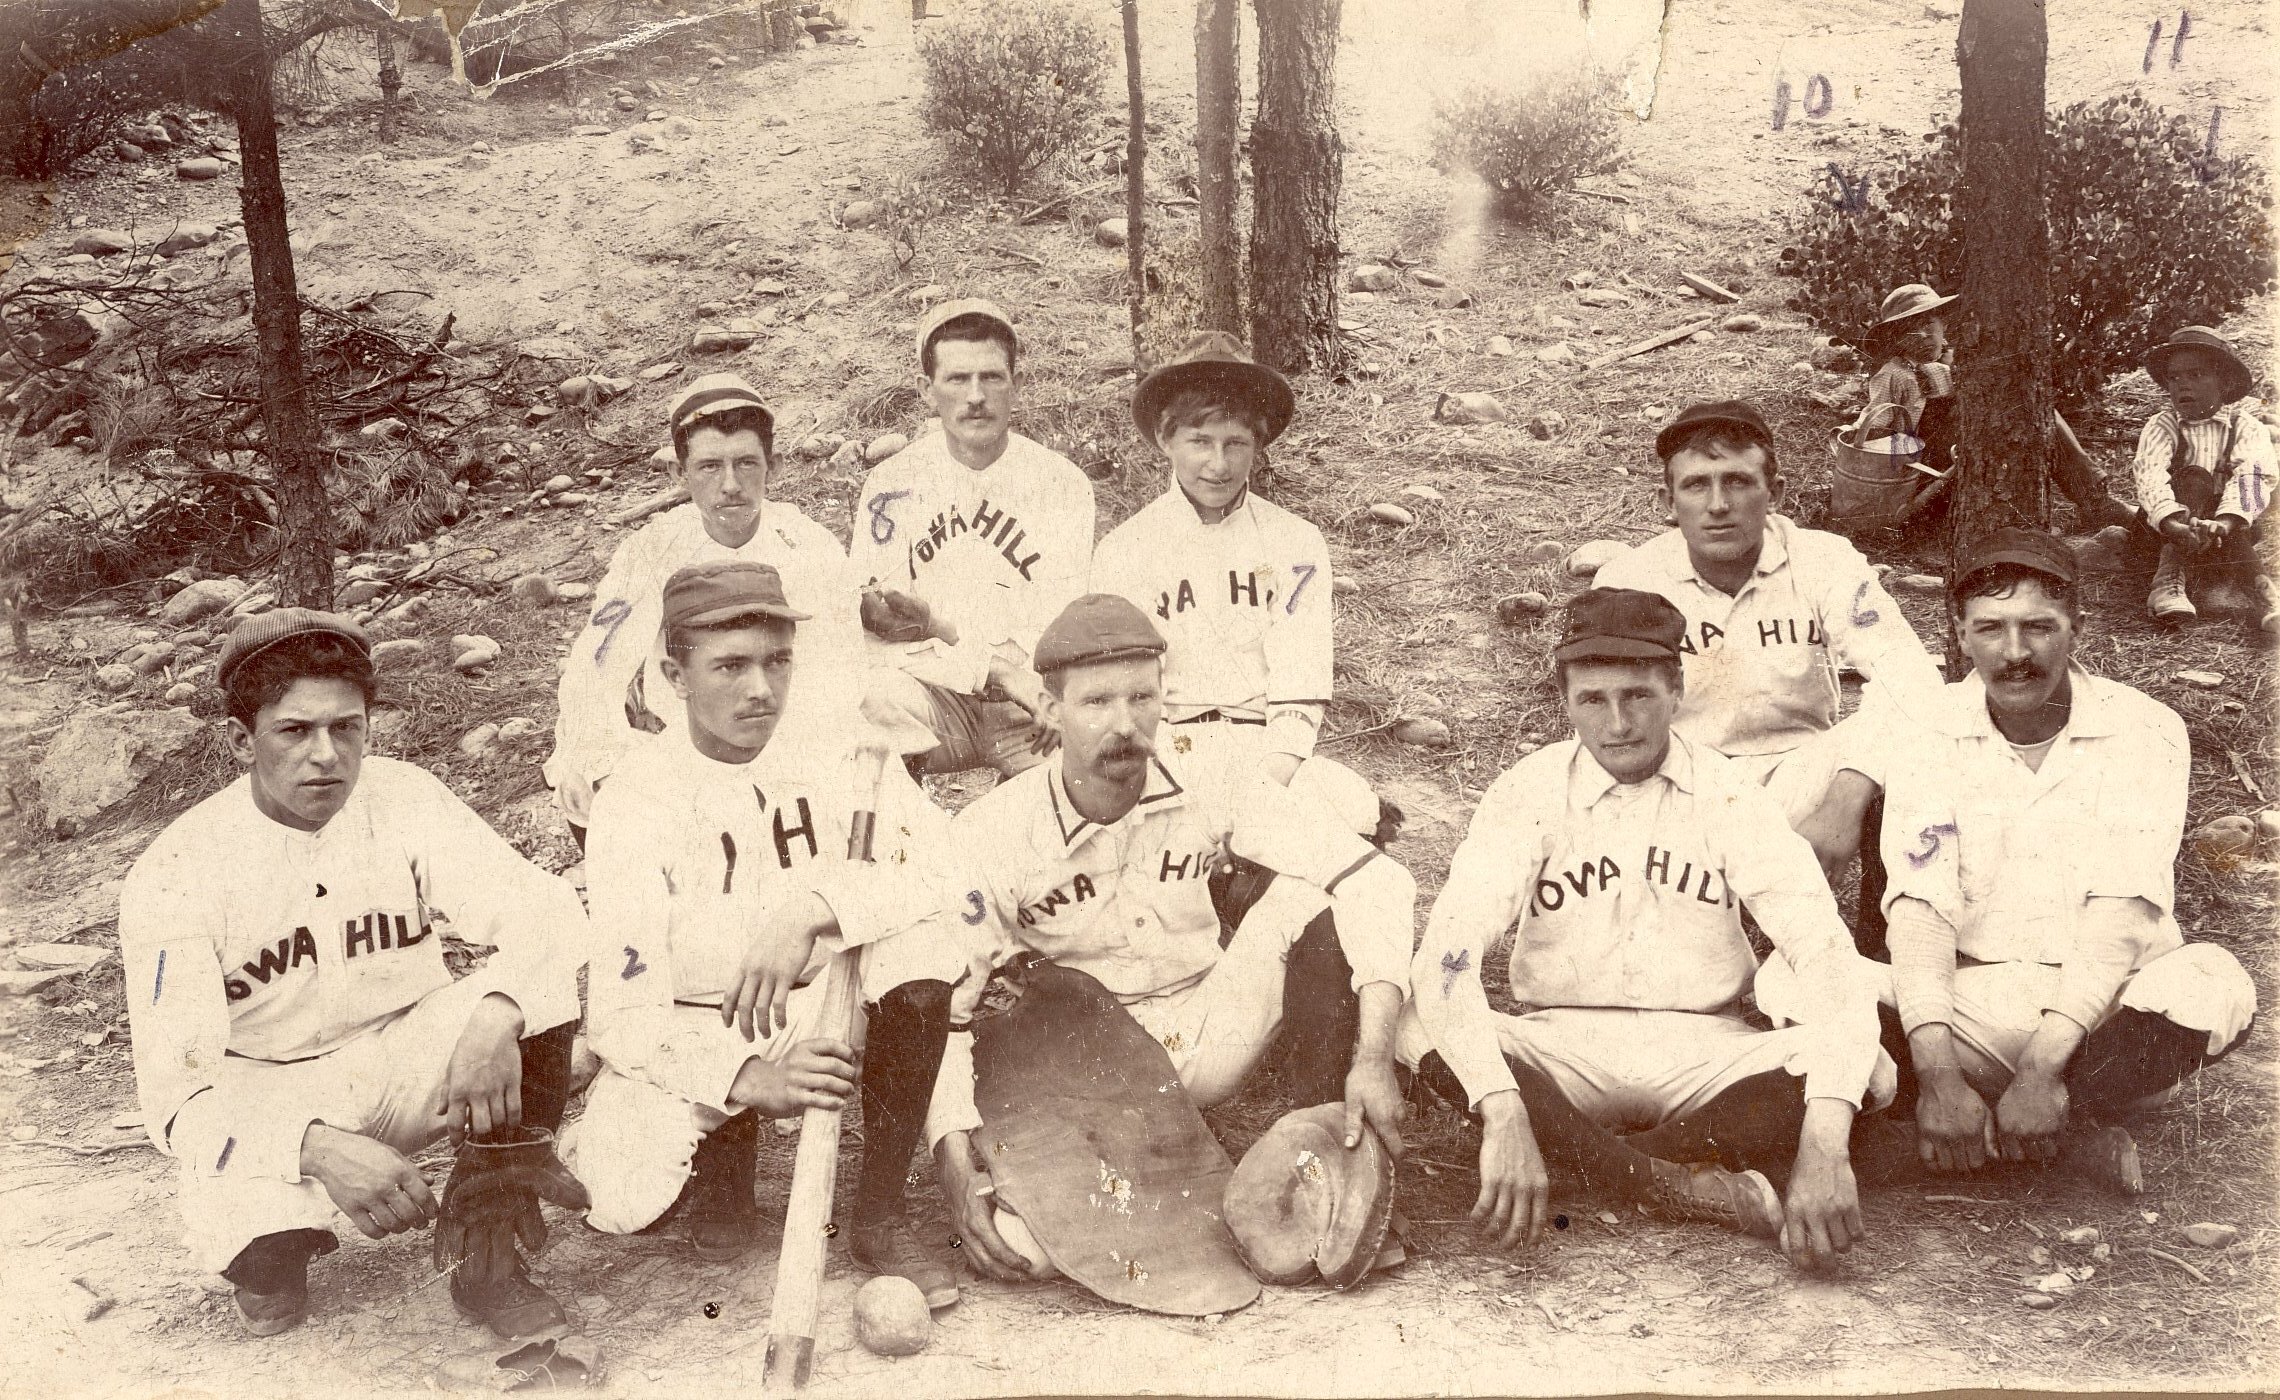 Iowa Hill Baseball Team